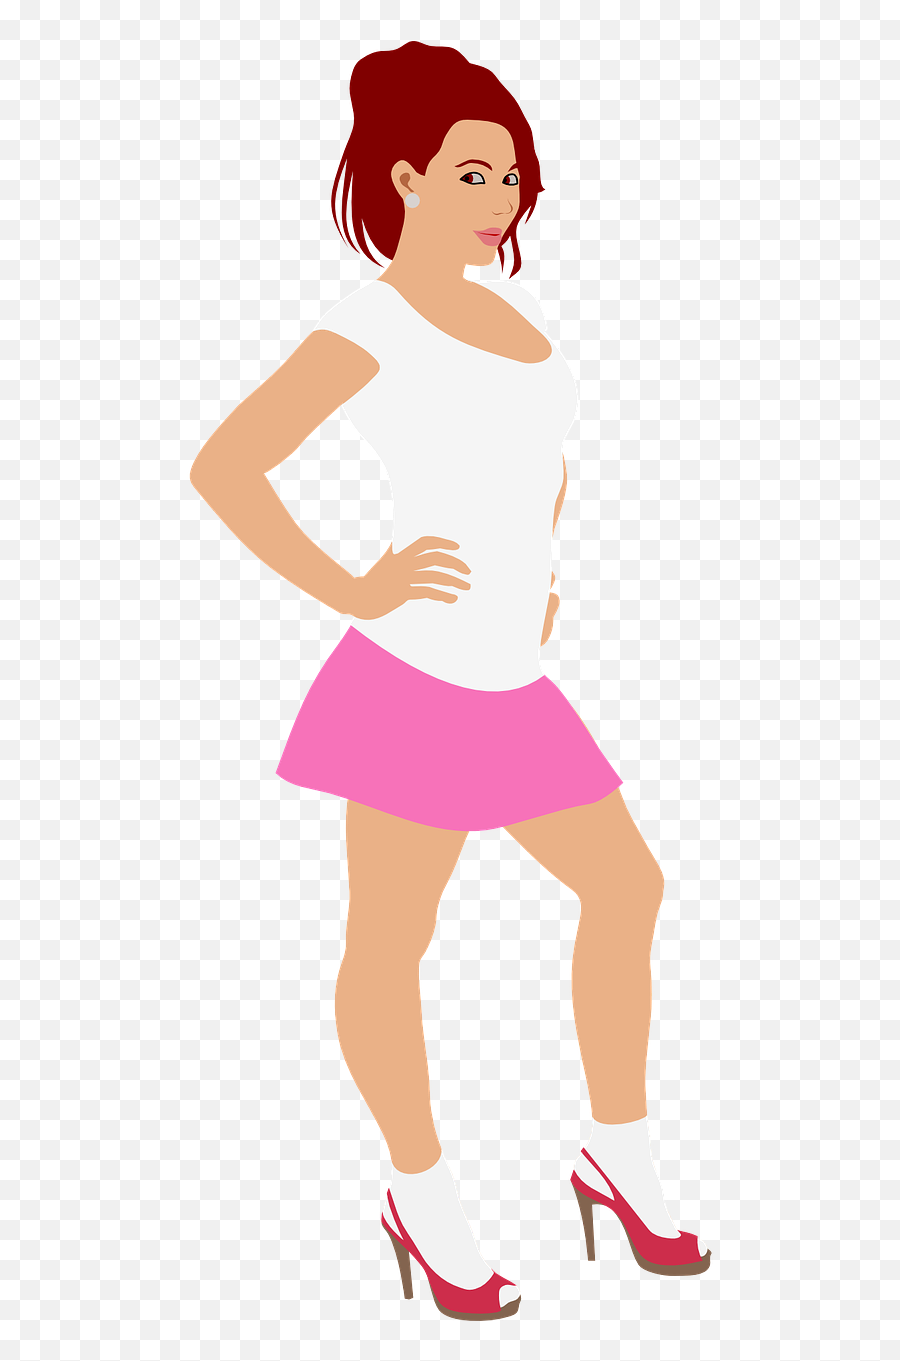 Girl High - Heel Short Skirt White Free Vector Graphic On Emoji,Skirt Png